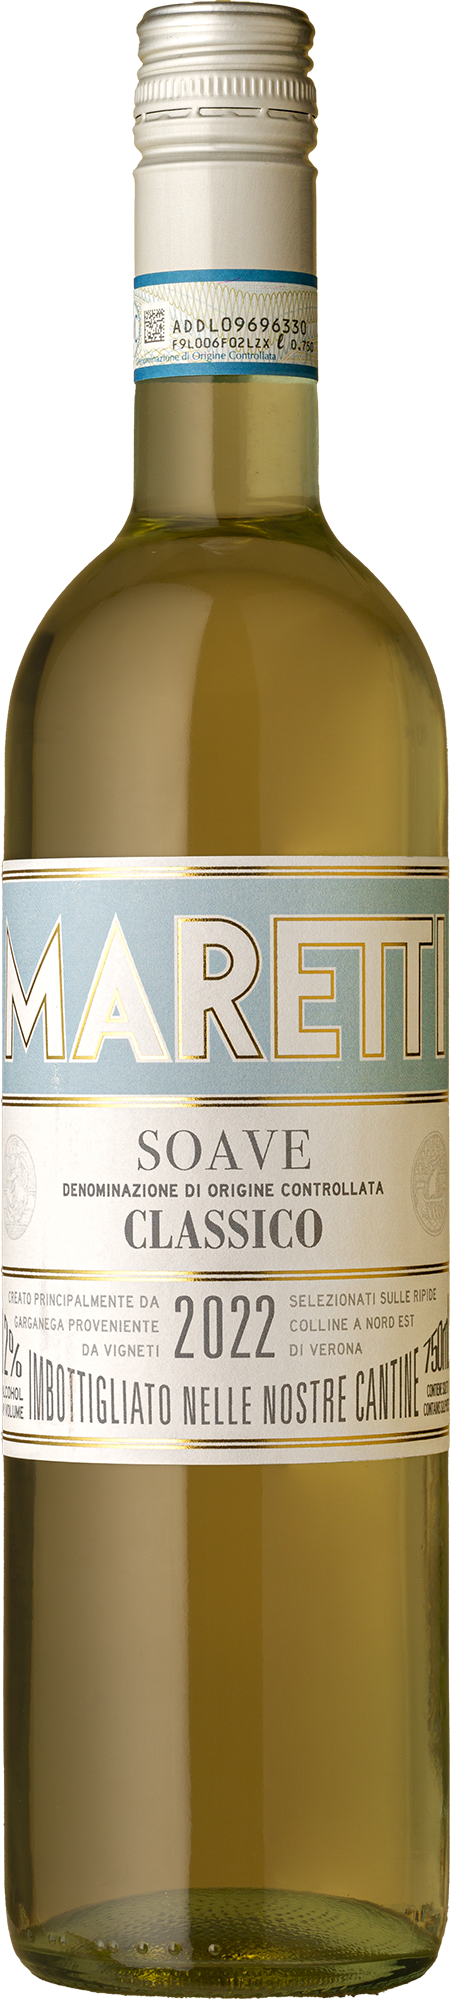 Maretti - Soave Classico Garganega 2022 White Wine